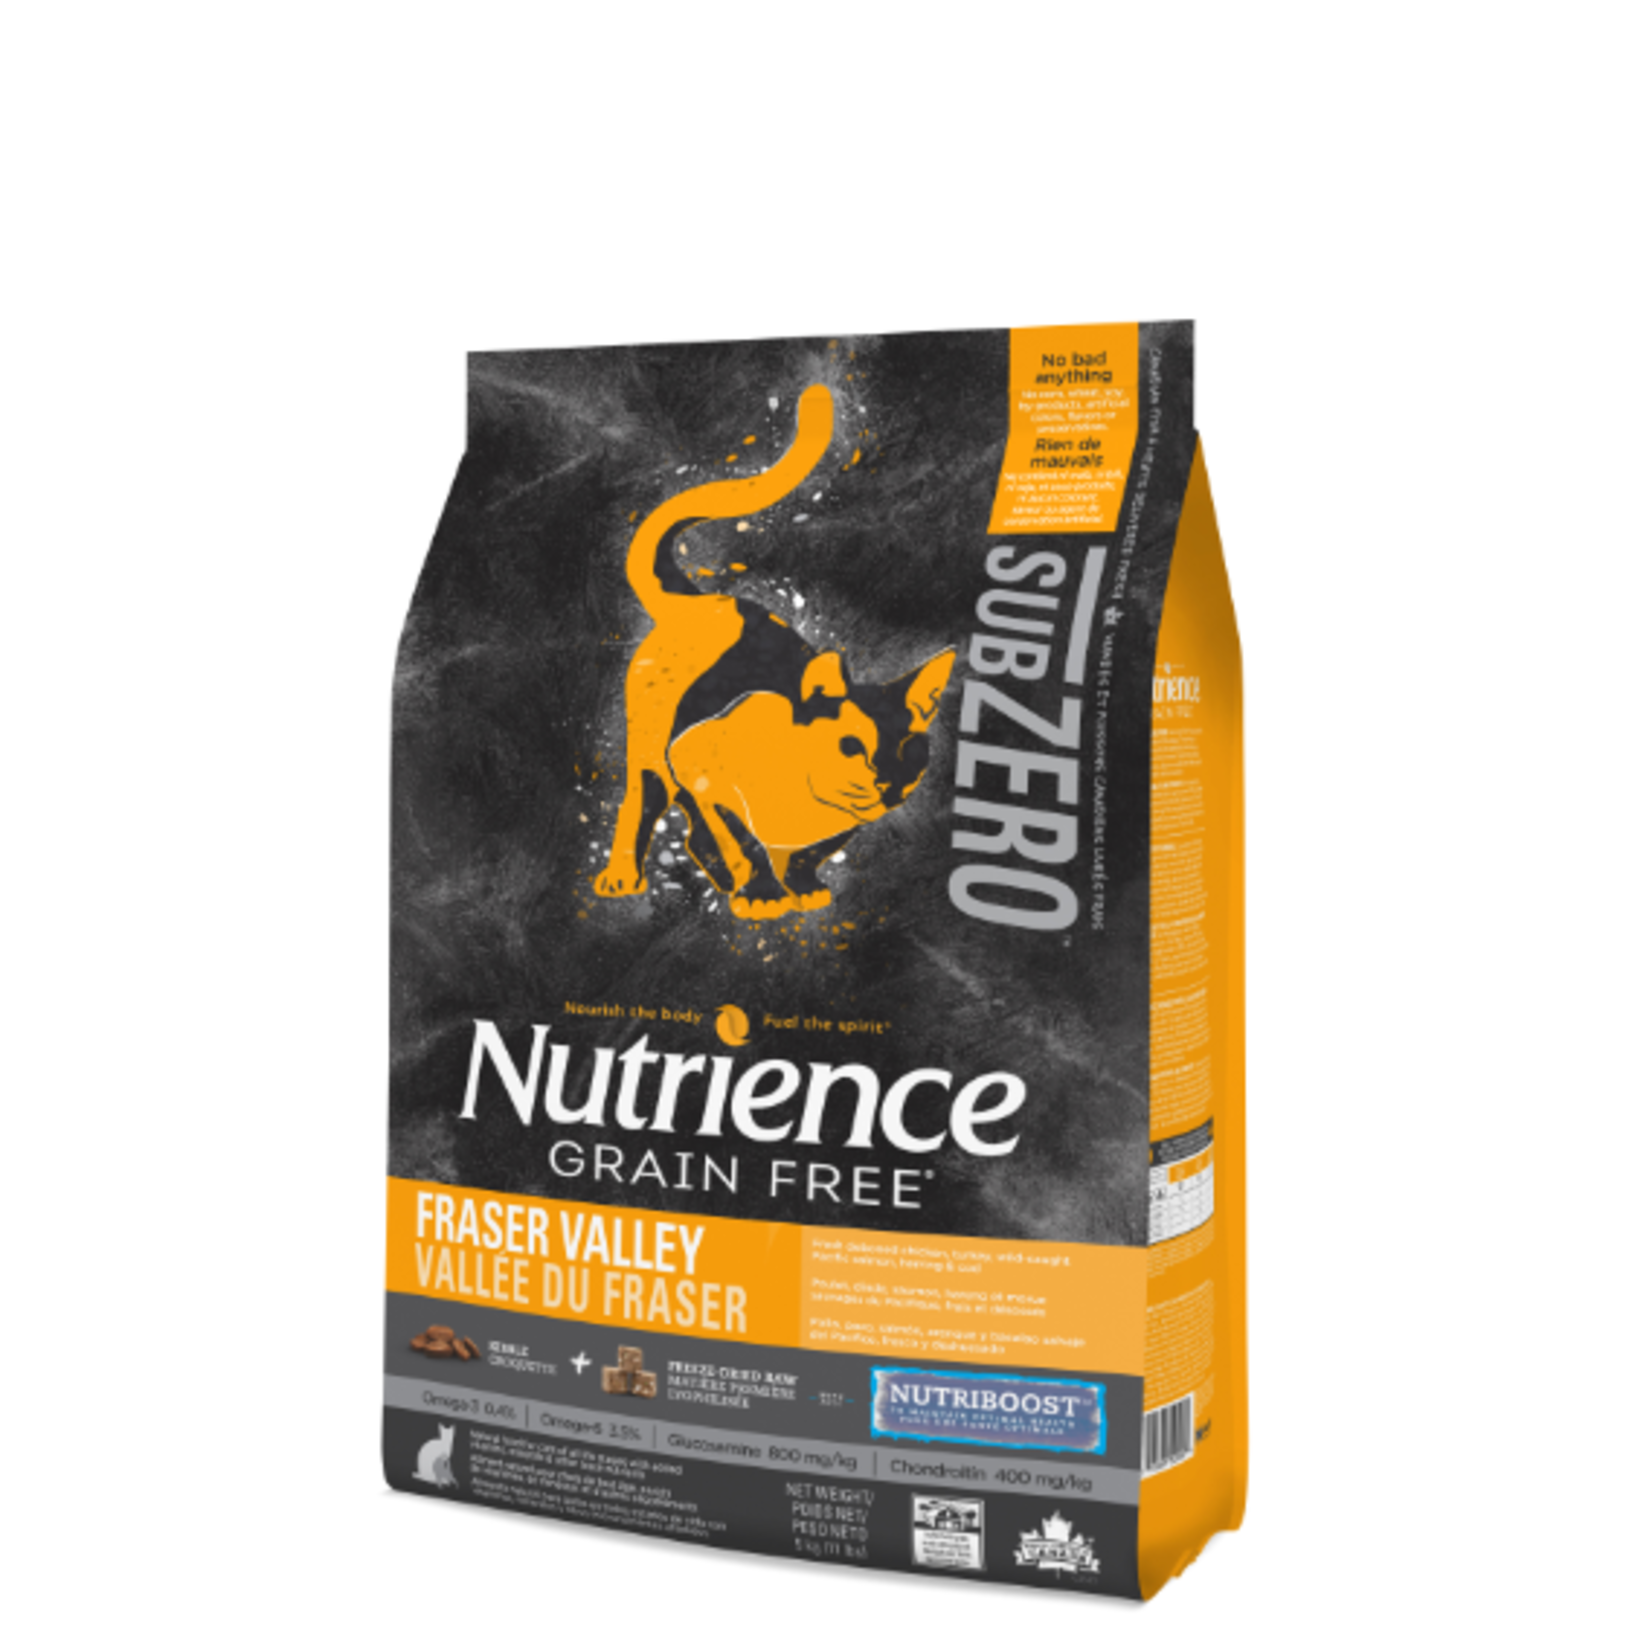 Nutrience Subzero - G Free - Fraser Valley - 11 lbs